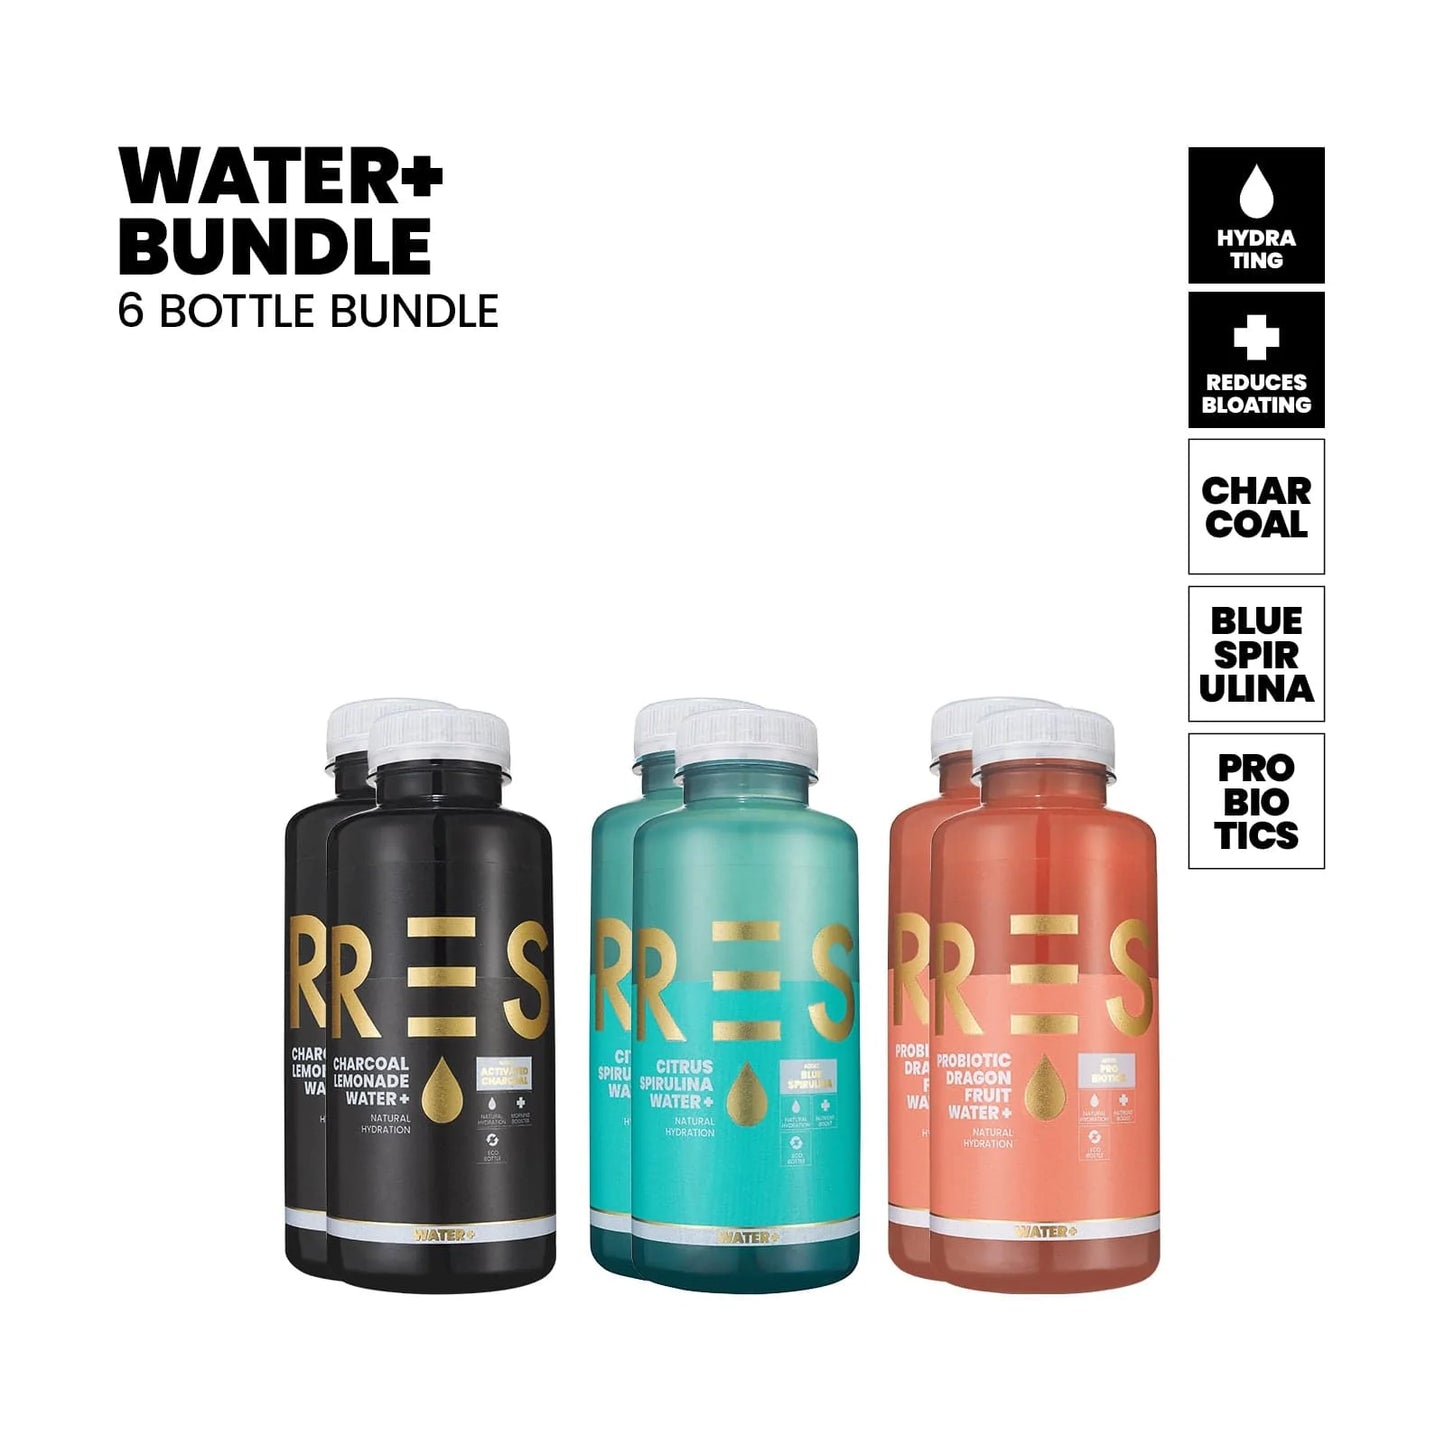 Water+ Bundle